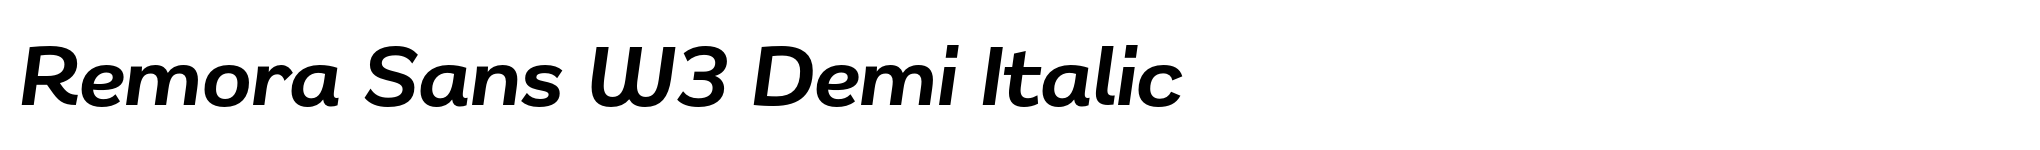 Remora Sans W3 Demi Italic image